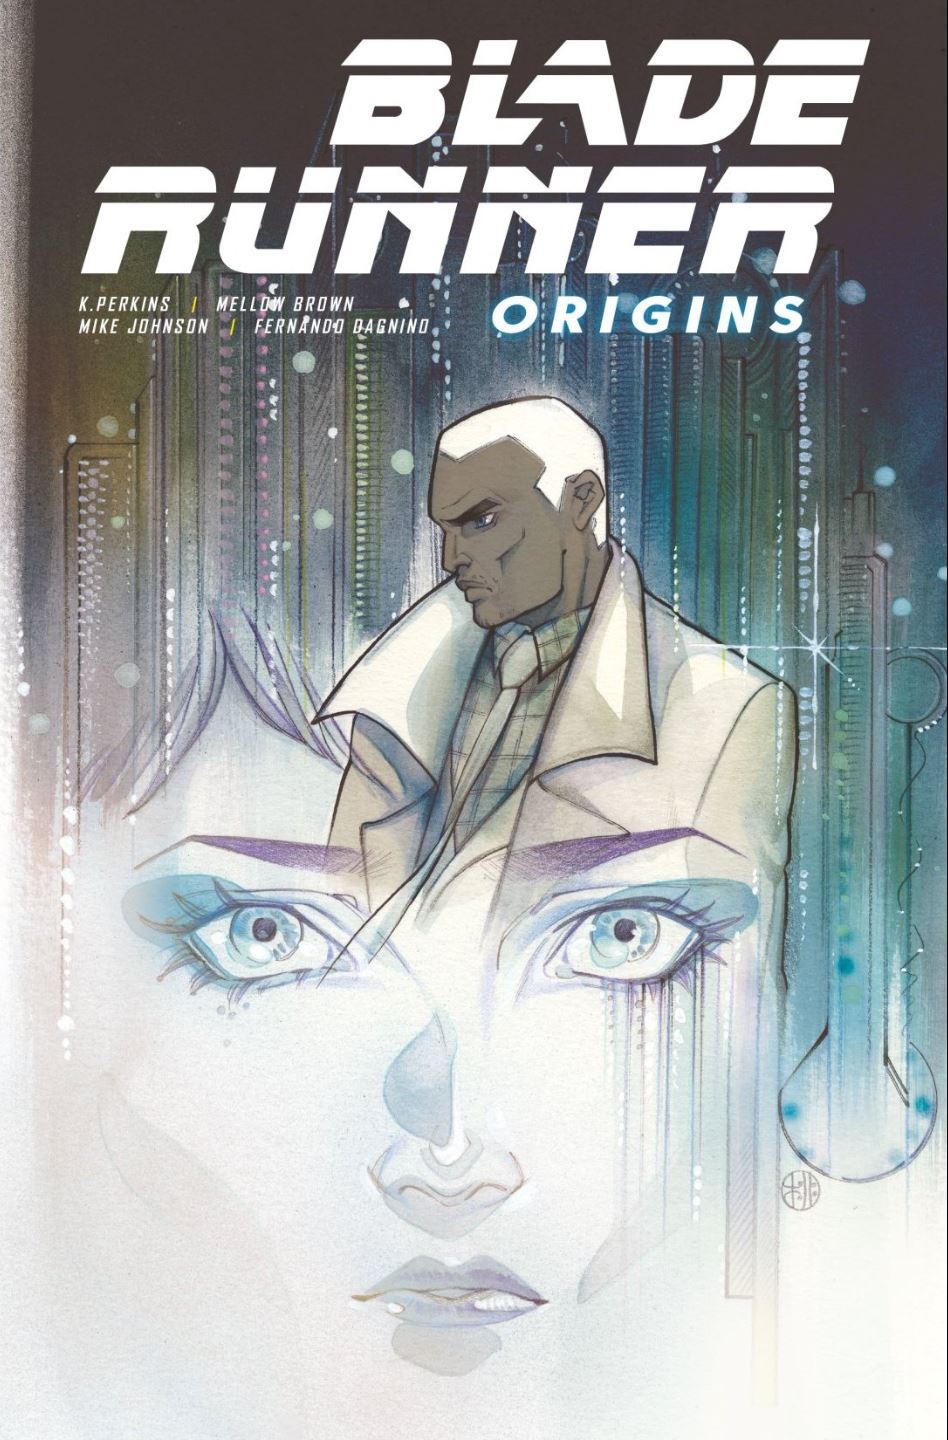 Blade Runner Origins issue 1 cover